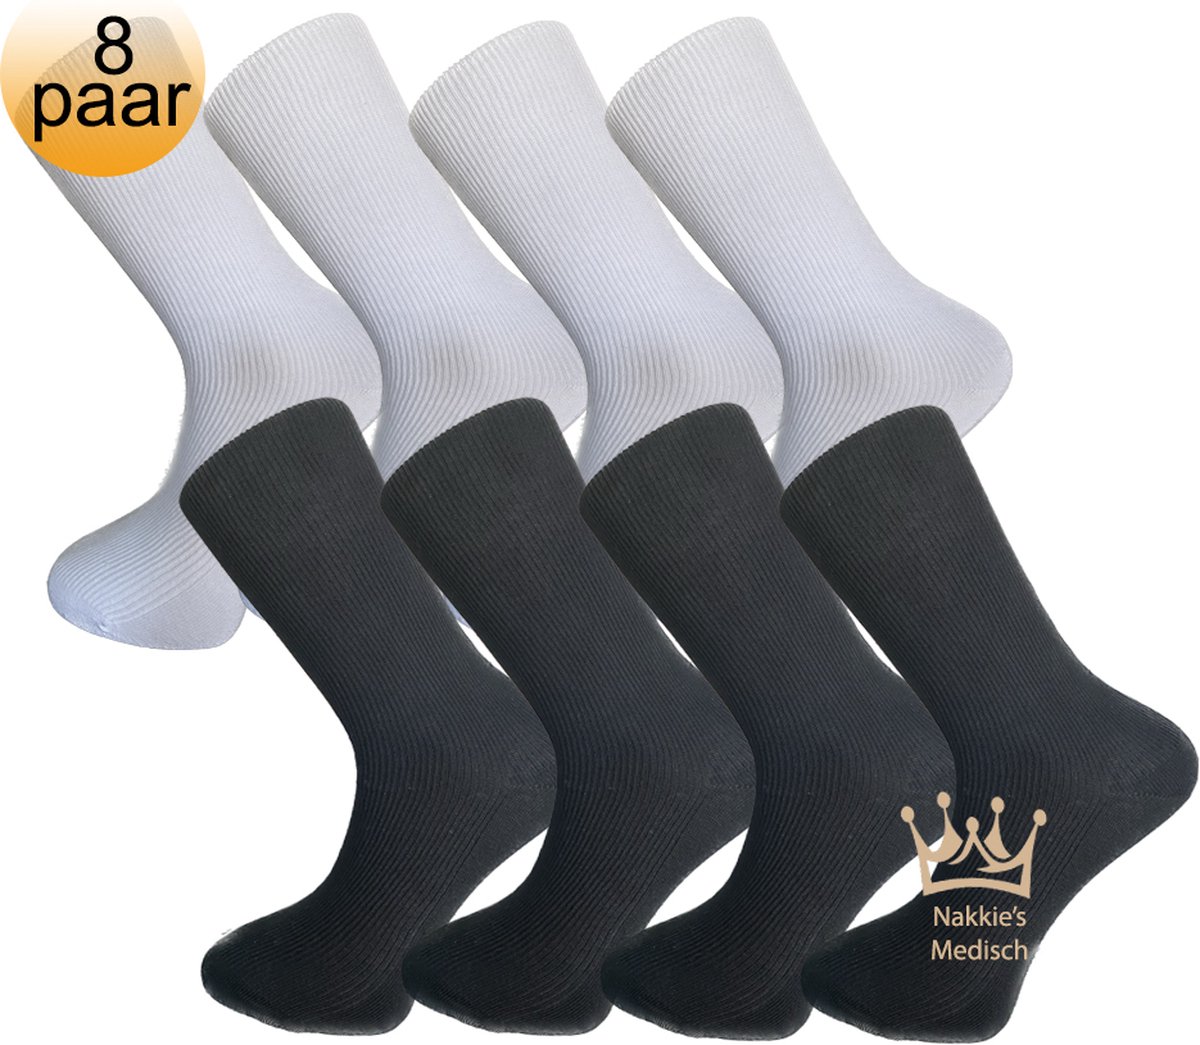 Medische sokken - 100% katoen - 8 paar - Maat 43/46 - Wit en Zwart